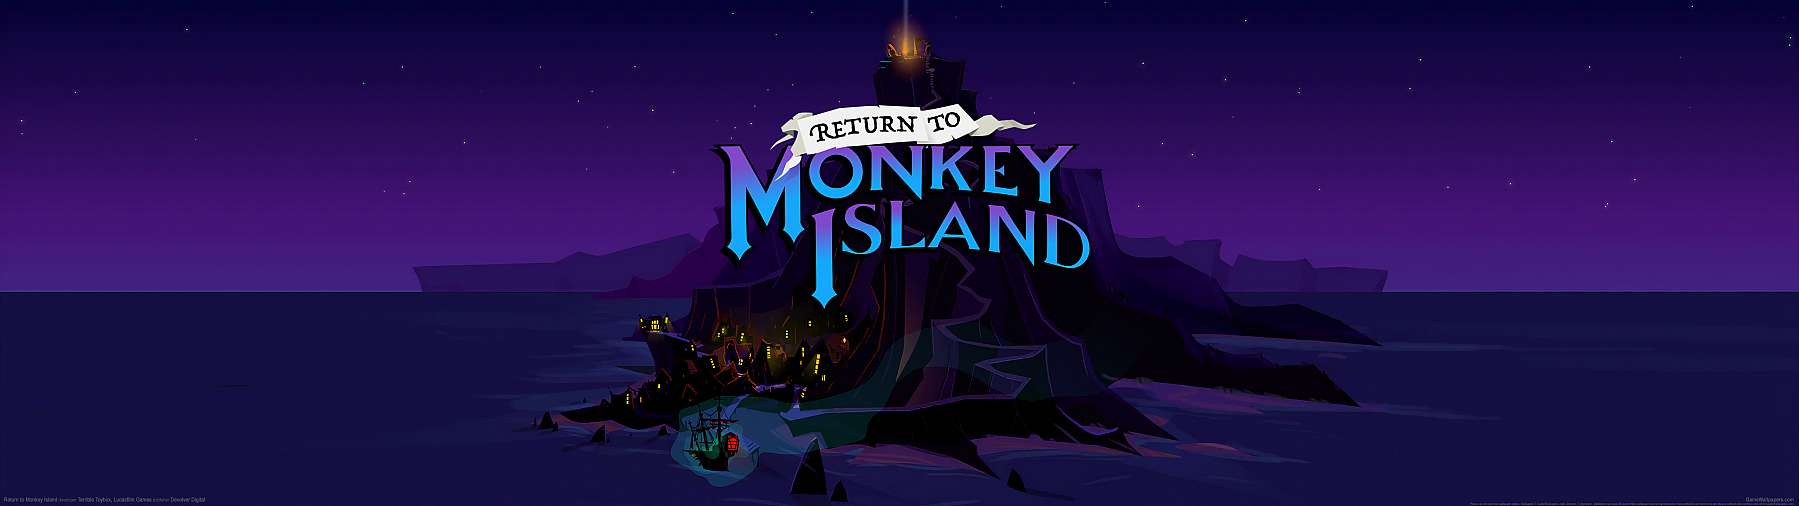 Return to Monkey Island superwide achtergrond 02